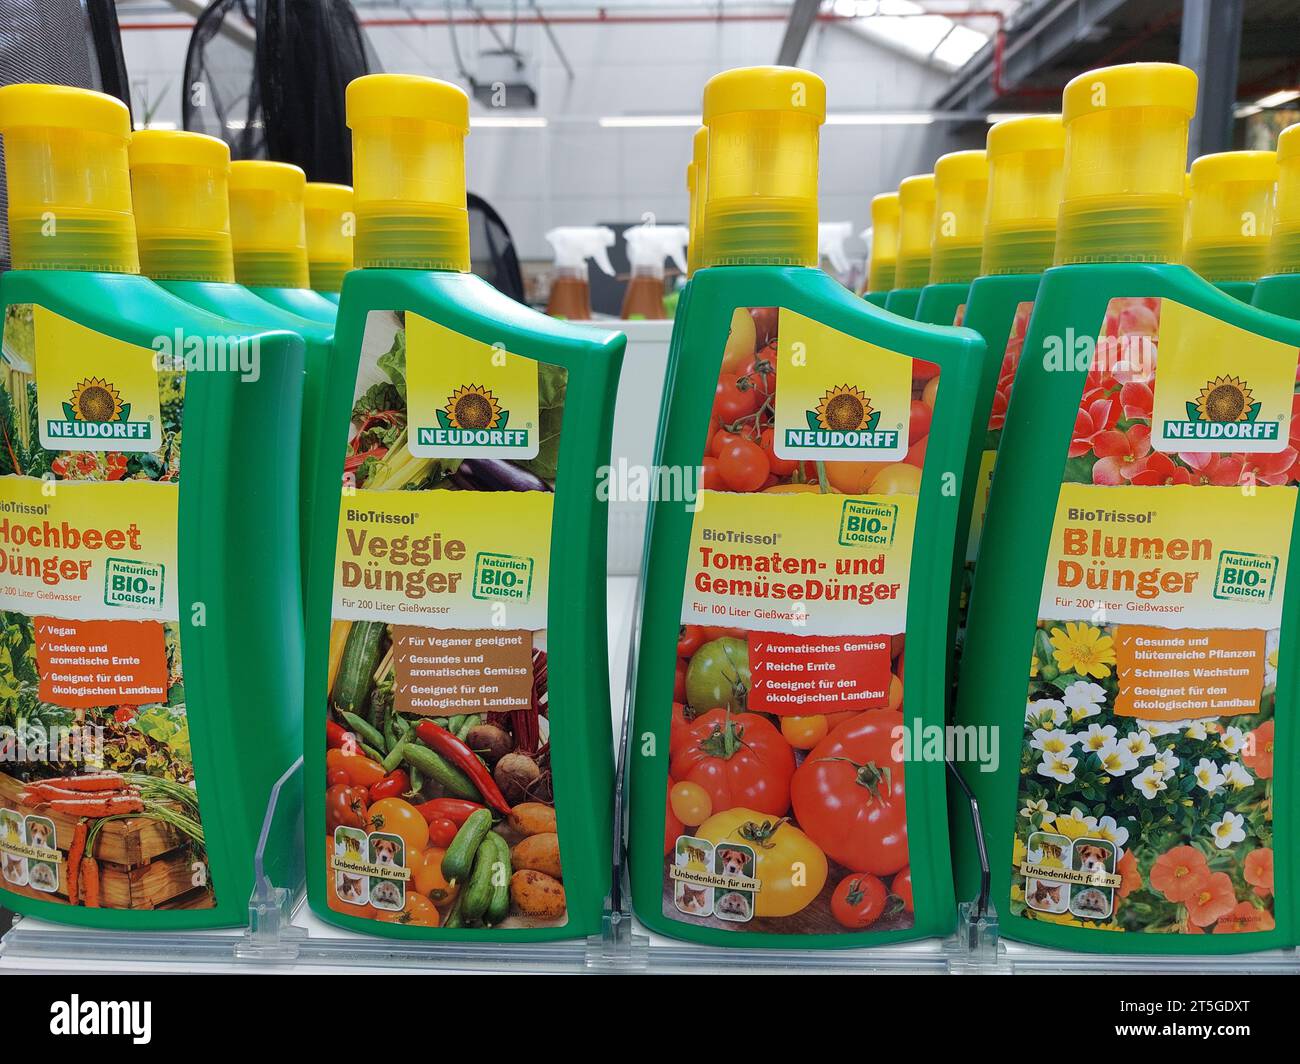 tomato and veggie fertilizer bottles by Neudorff in a garden market Stock Photo